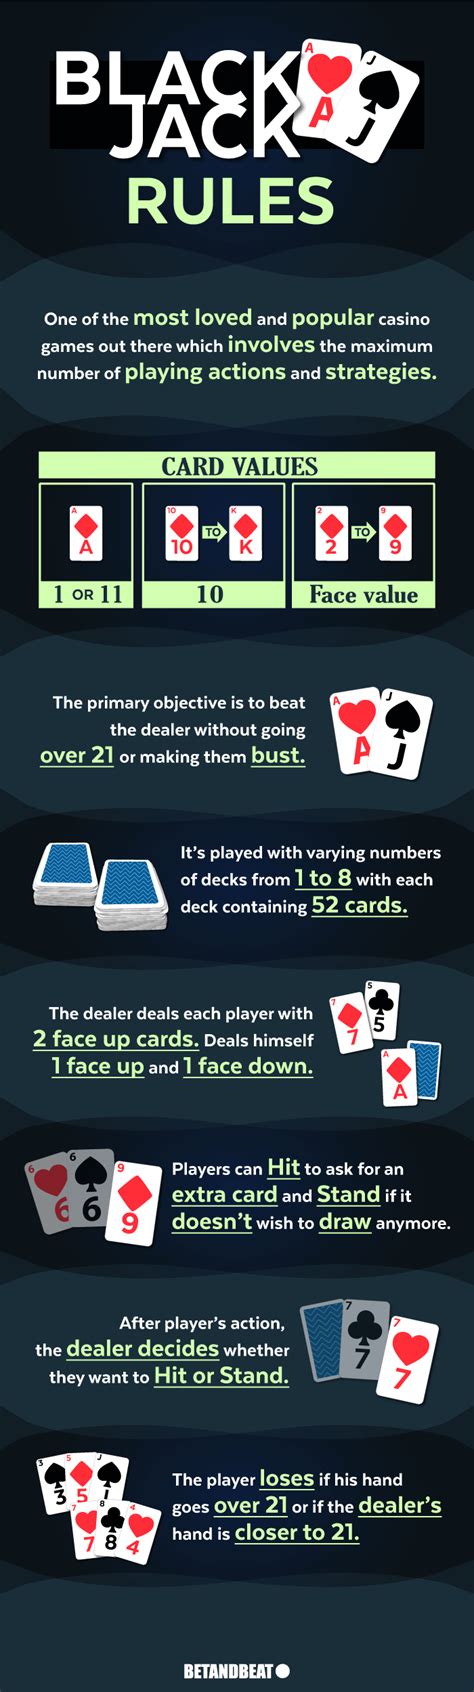 blackjack card games rules smpg